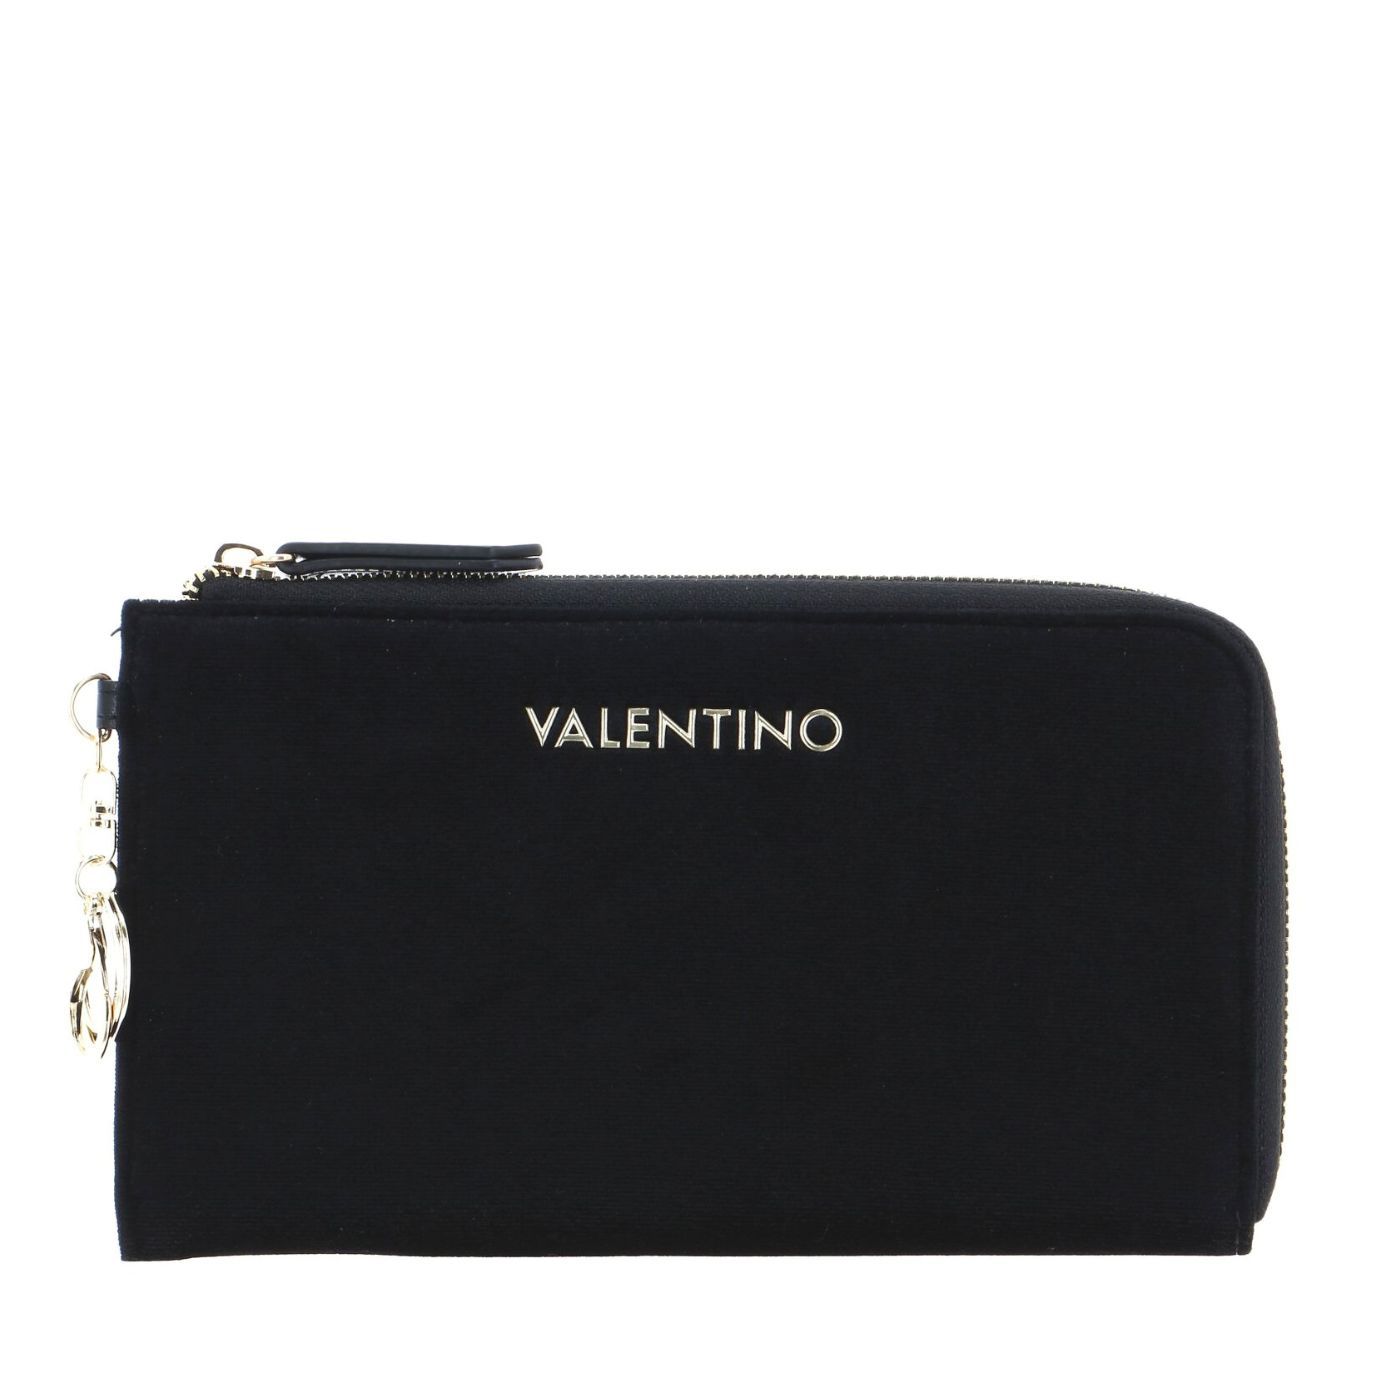 Valentino Mistletoe kozmetika táska I FEKETE